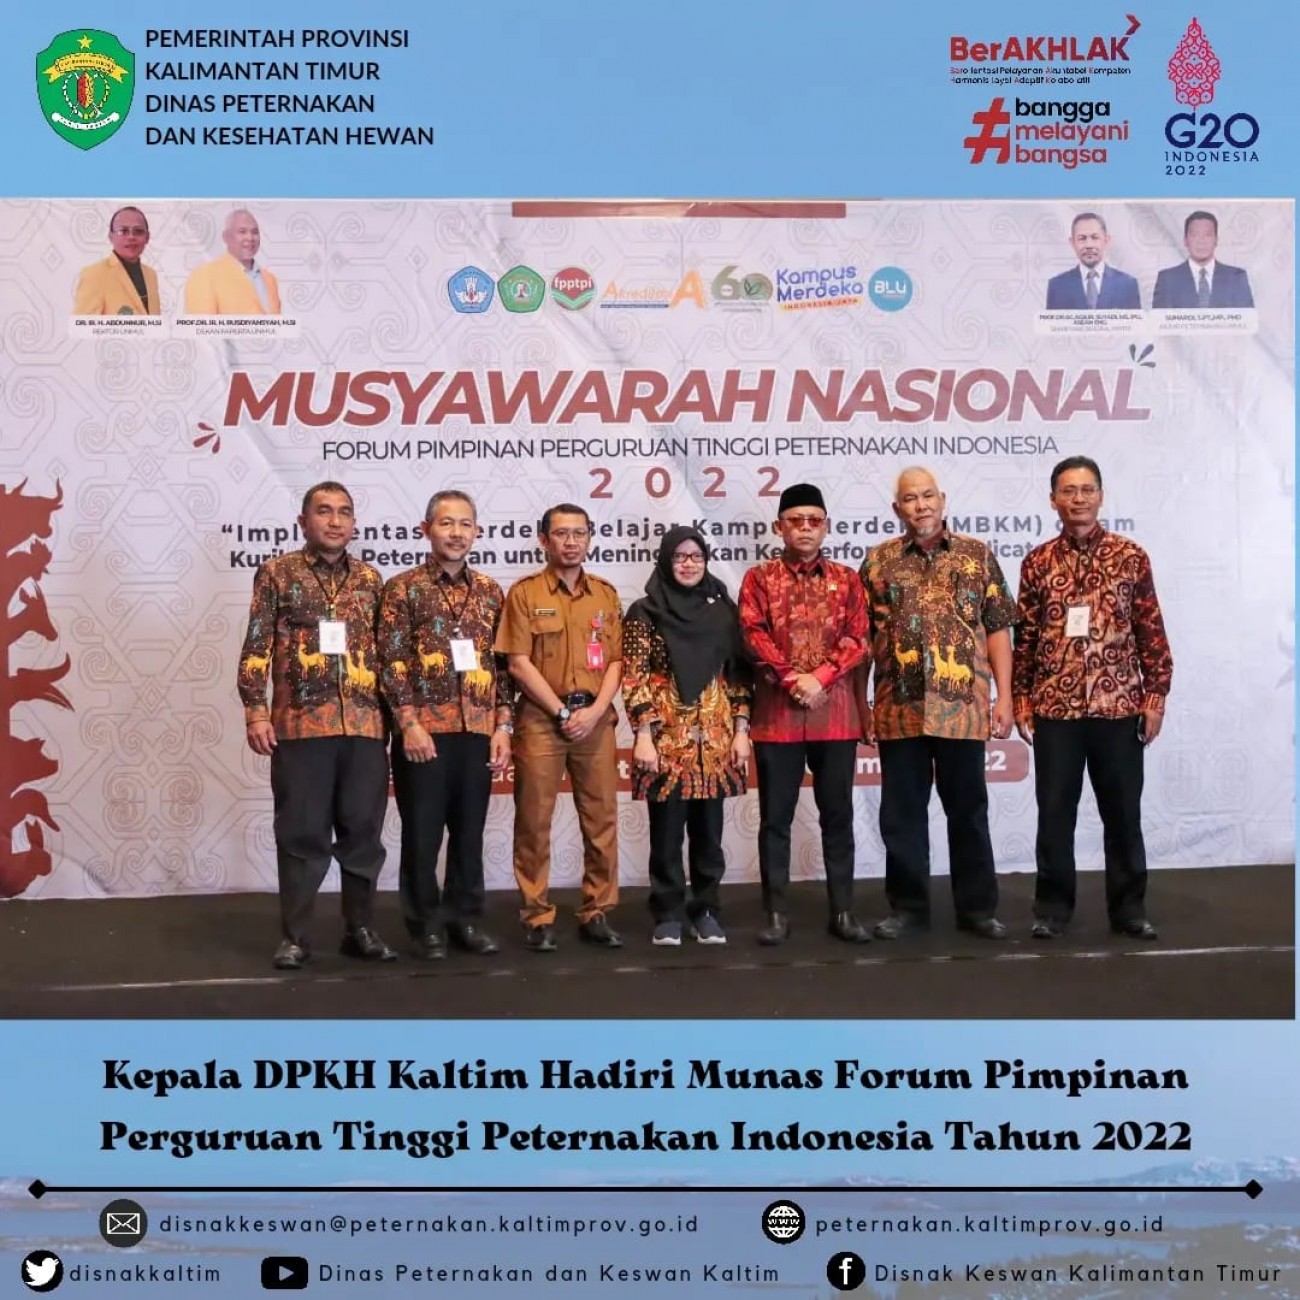 Kepala DPKH Kaltim Hadiri Munas Forum Pimpinan Perguruan Tinggi Peternakan Indonesia Tahun 2022